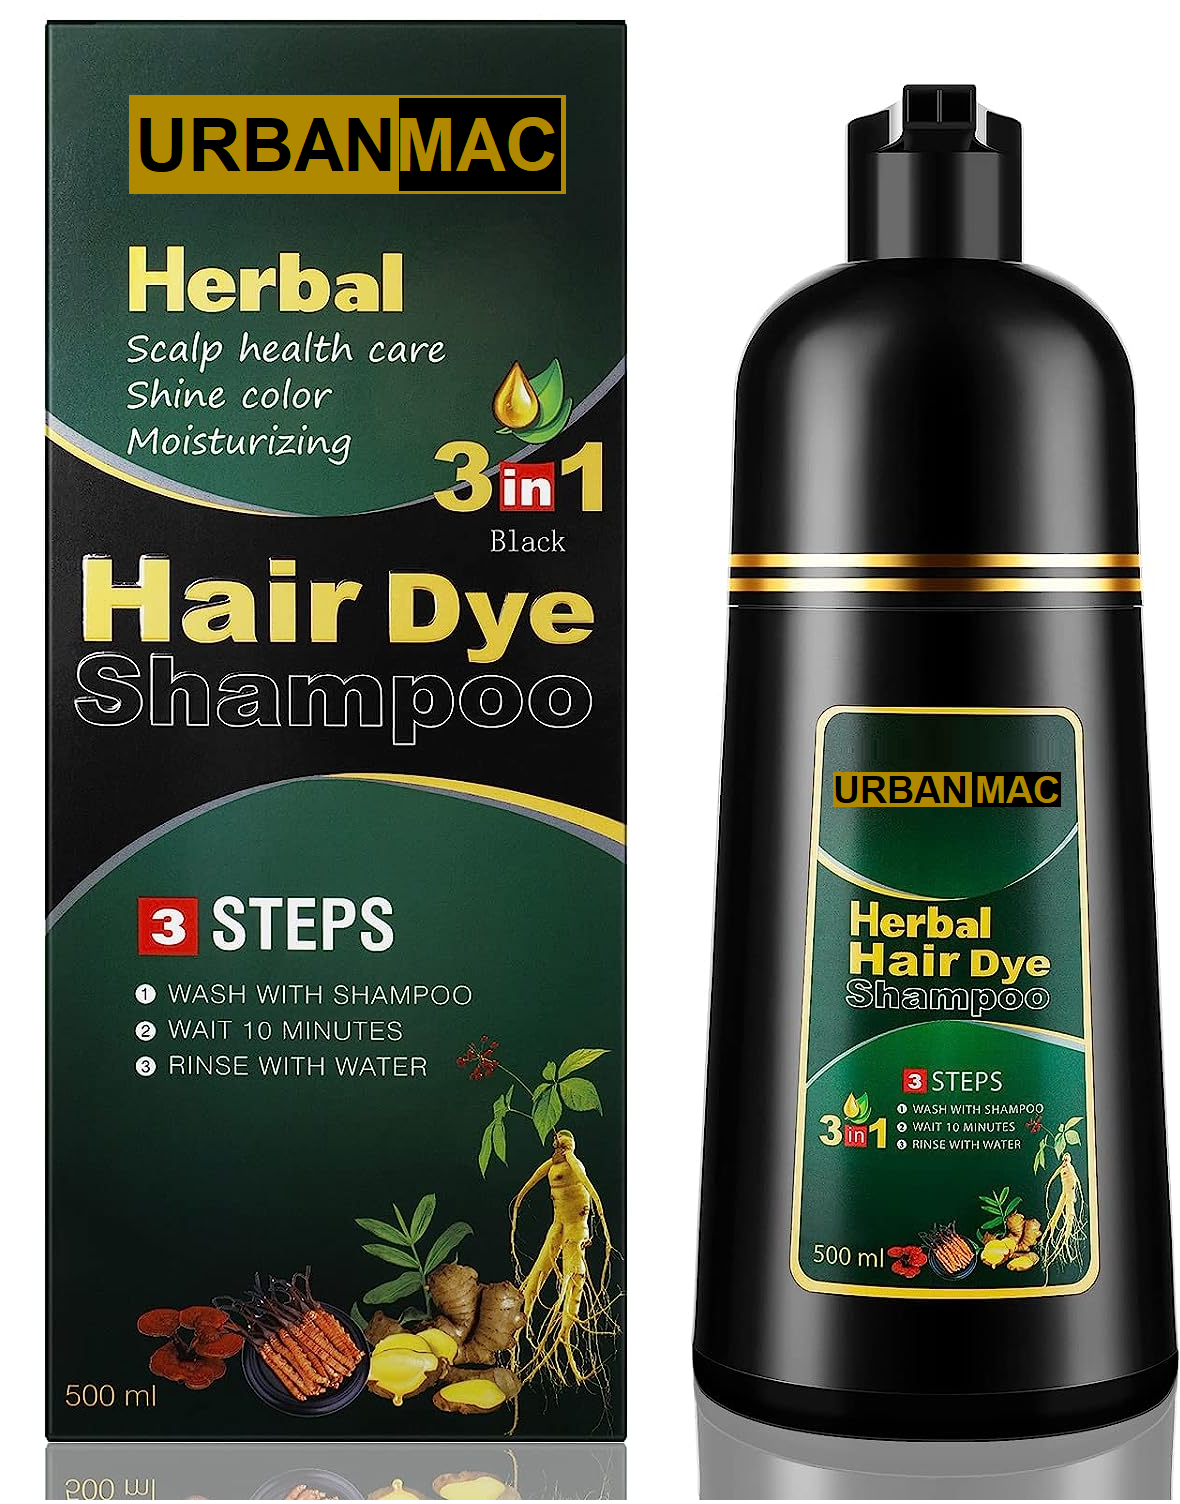 Herbal 3 in 1 Hair Dye Instant Black Hair Shampoo for Women & Men 500ml.